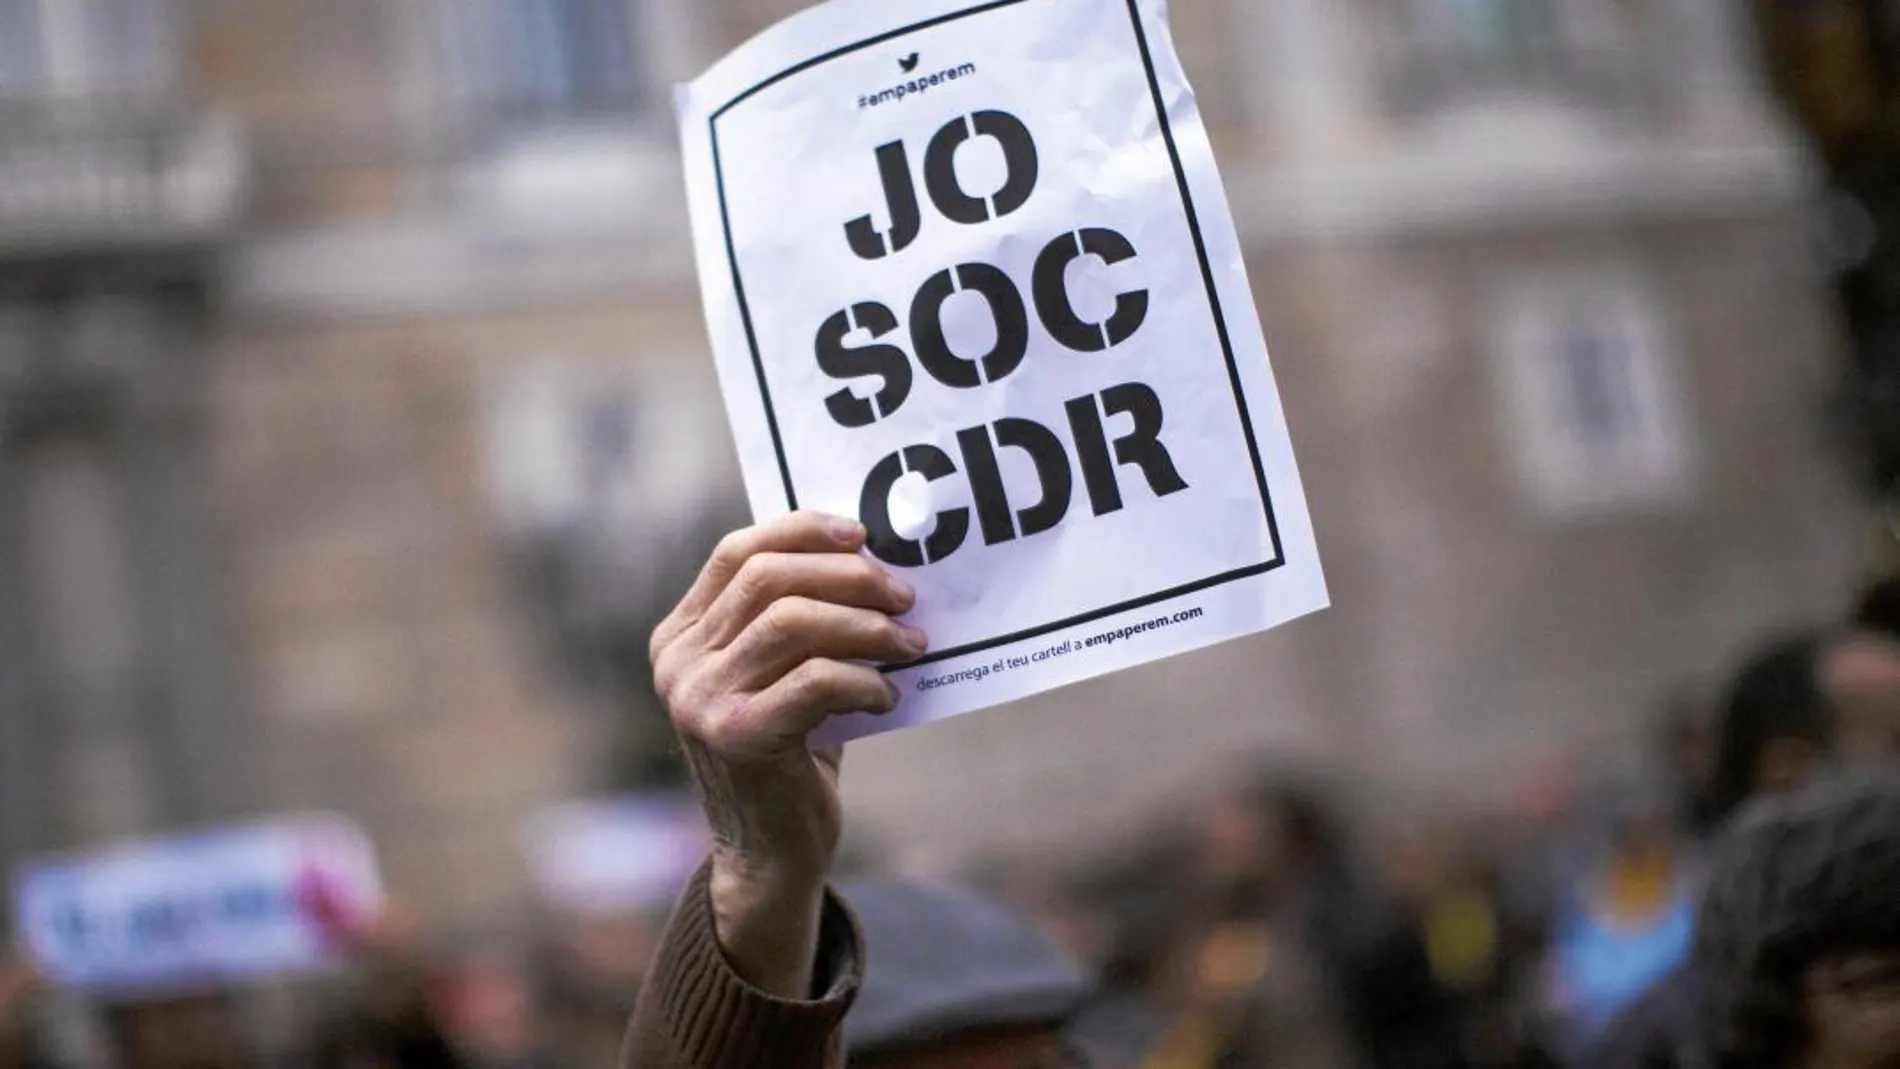 Muchas protestas de los CDR los llamados Comités de Defensa de la República protagonizaron ayer, de nuevo, numerosas protestas en Cataluña, en defensa de du deseada república